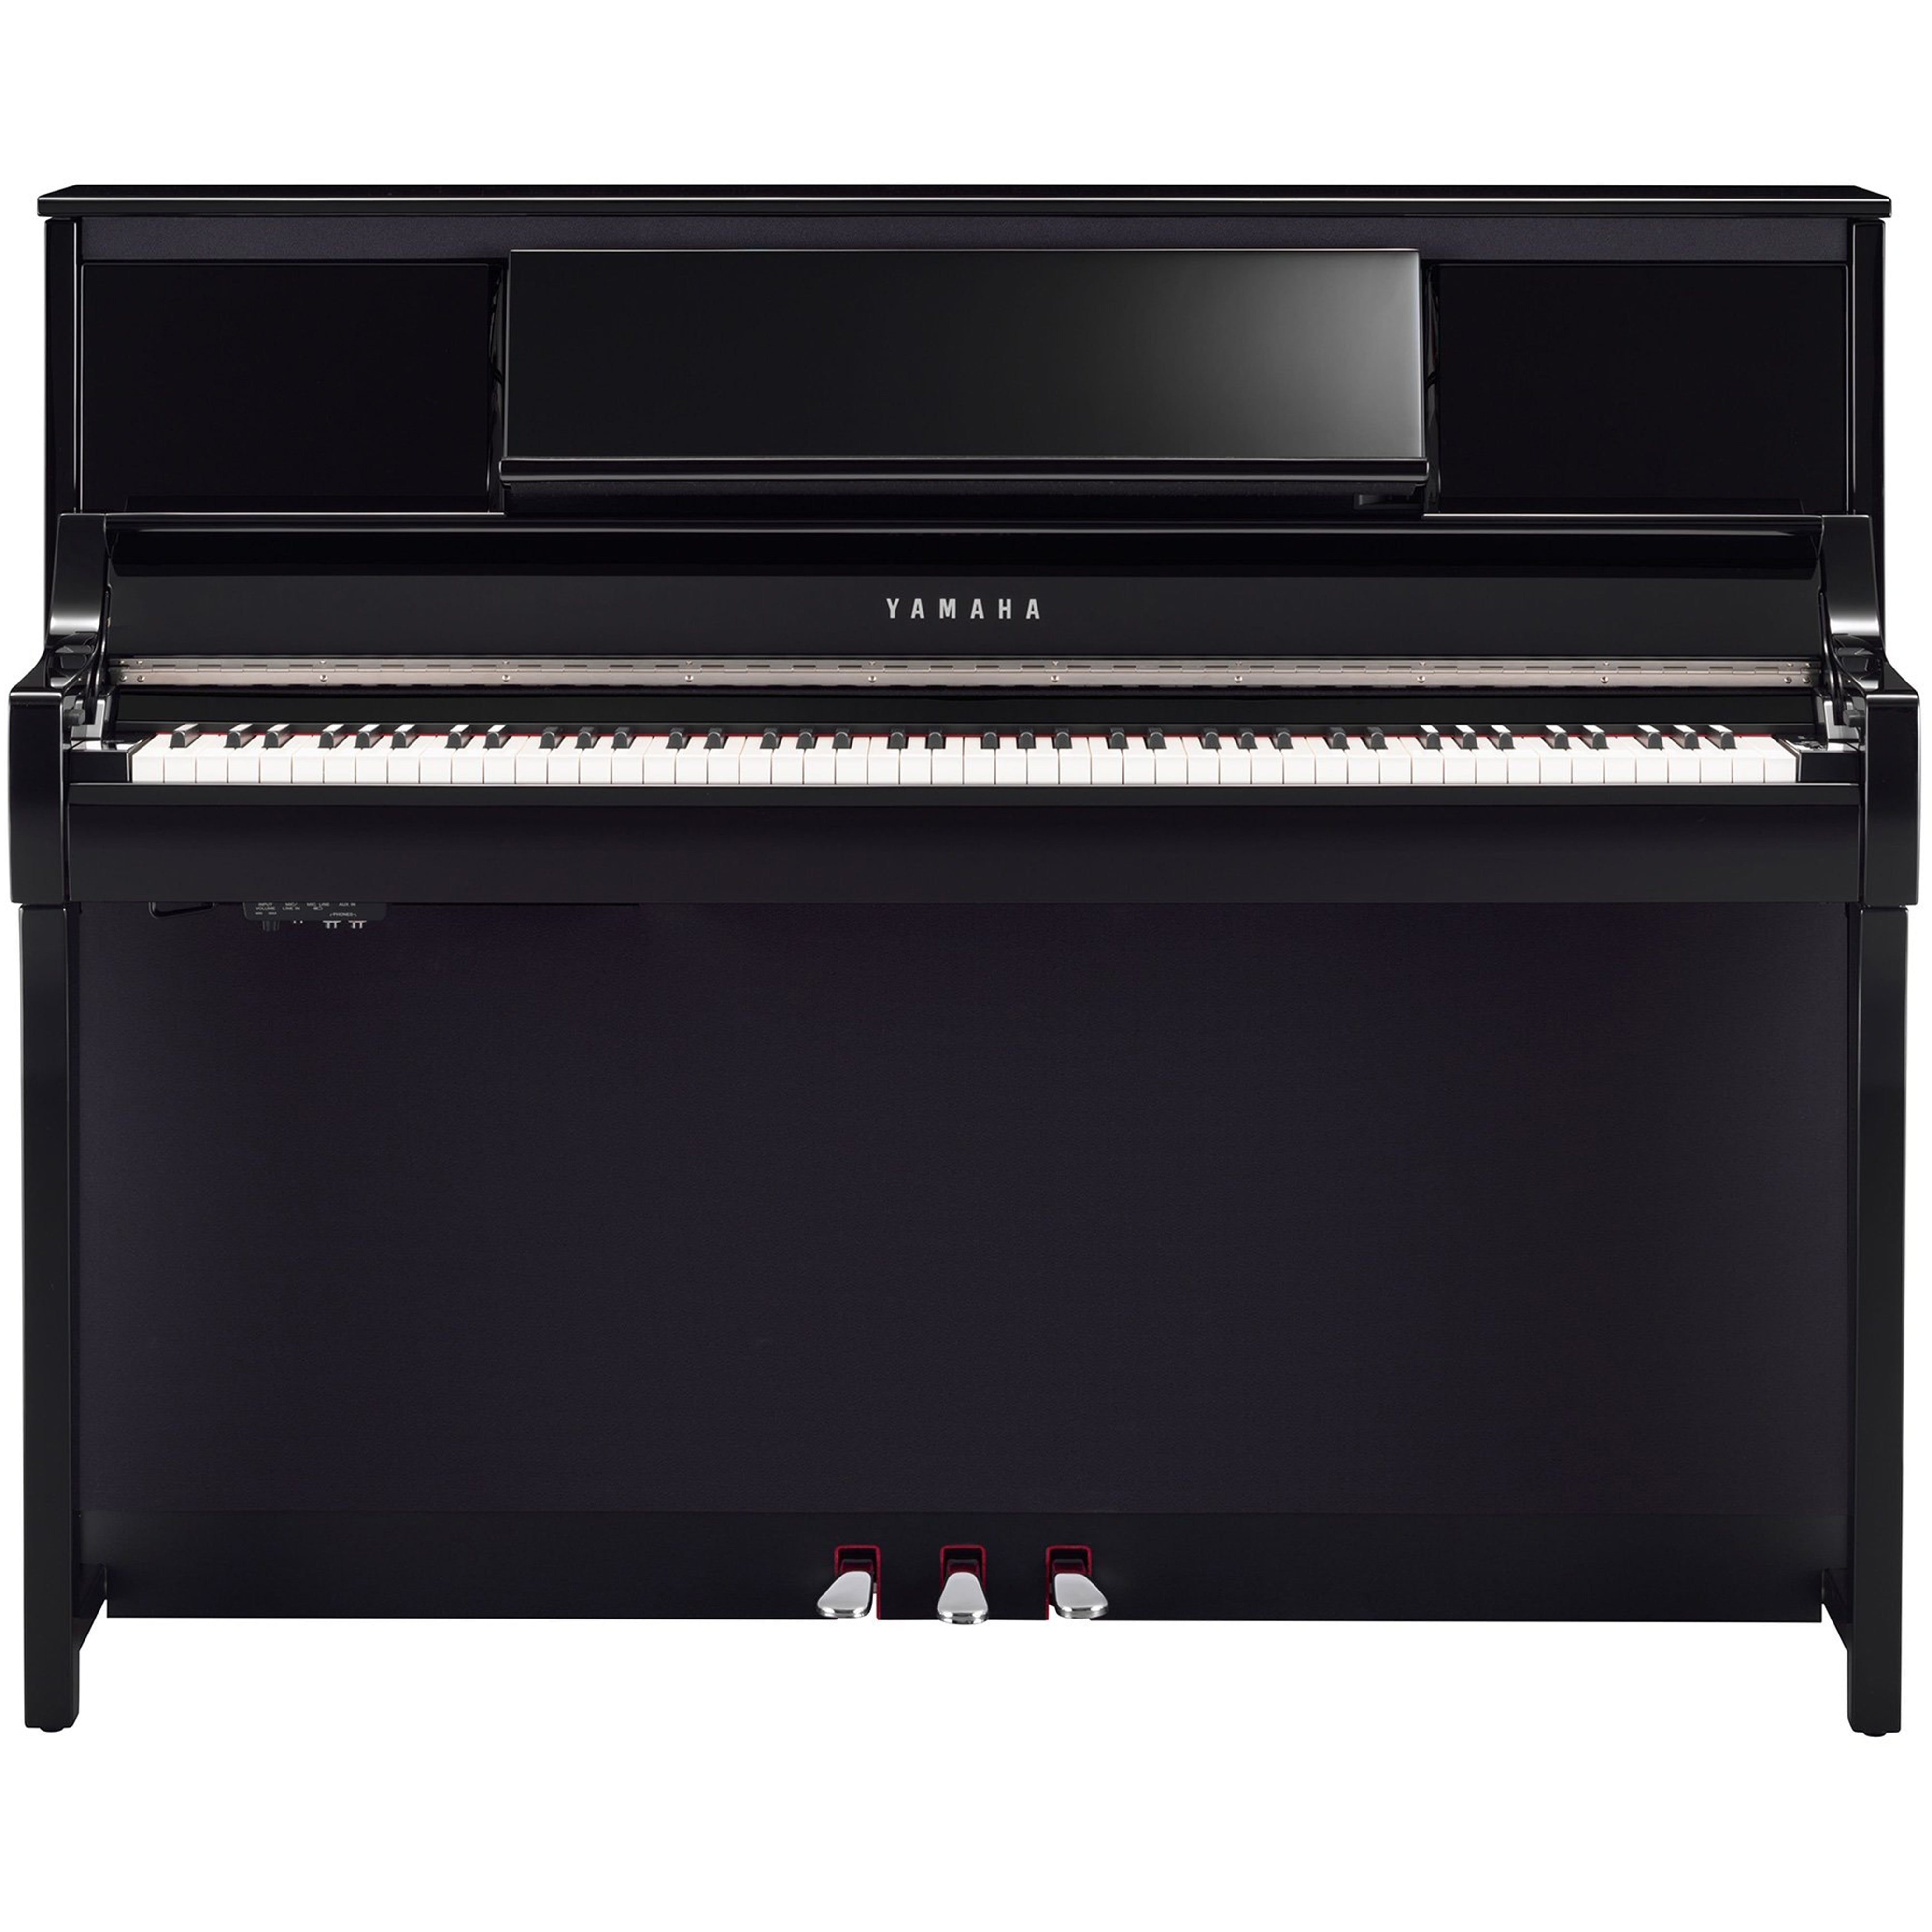 Yamaha Clavinova CSP-295 Digital Piano - Polished Ebony - front